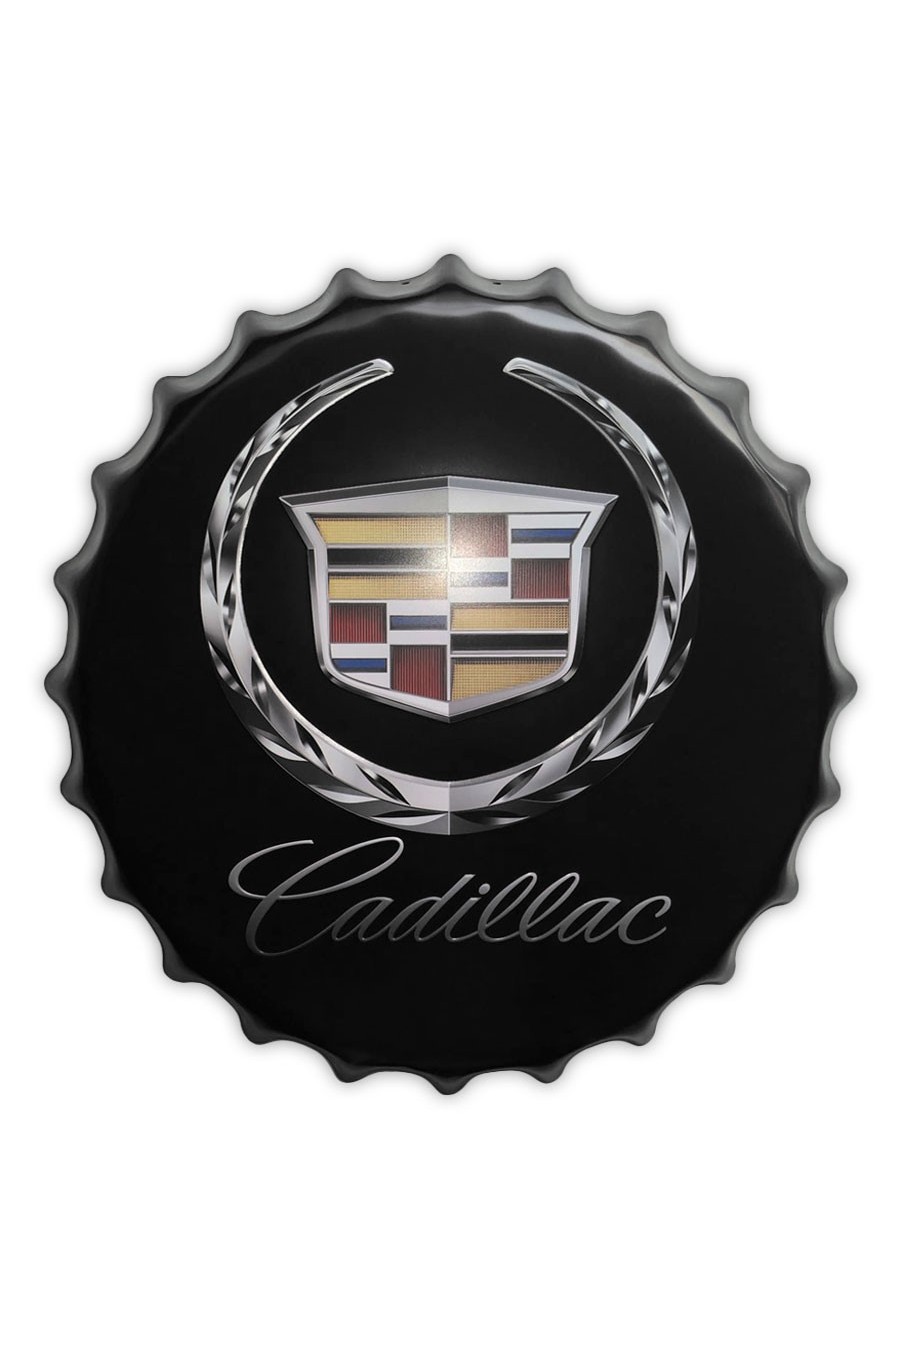 Dekoratives Cadillac-Abzeichen